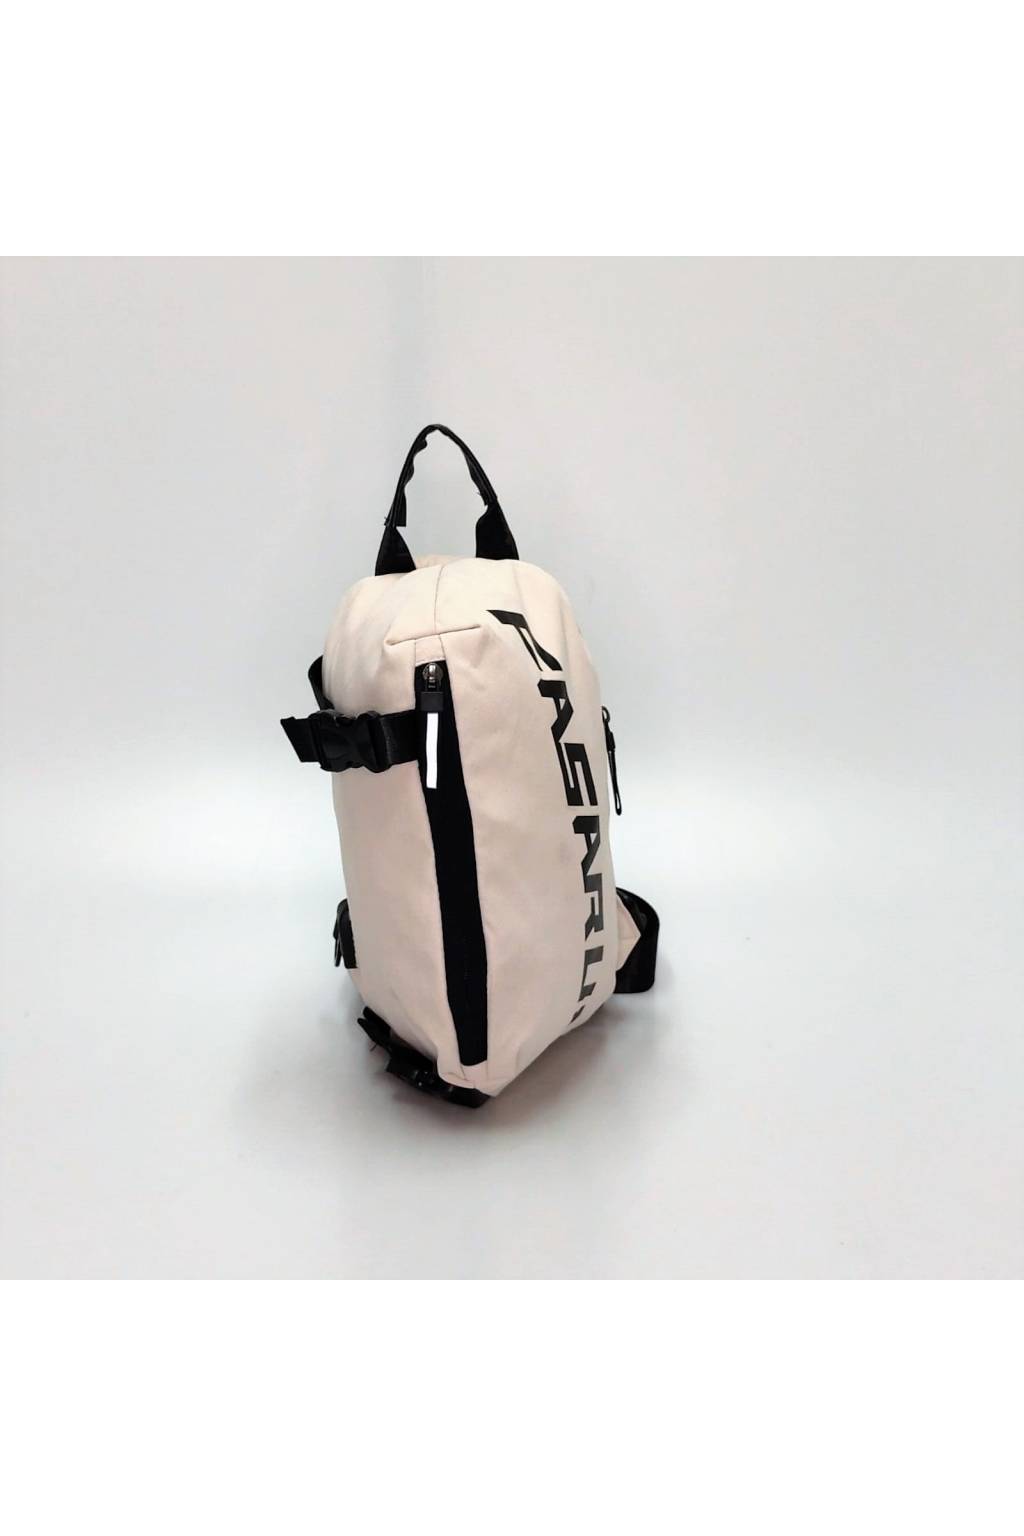 Pánska ľadvinka ruksak B7101 béžová www.kabelky vypredaj (9)